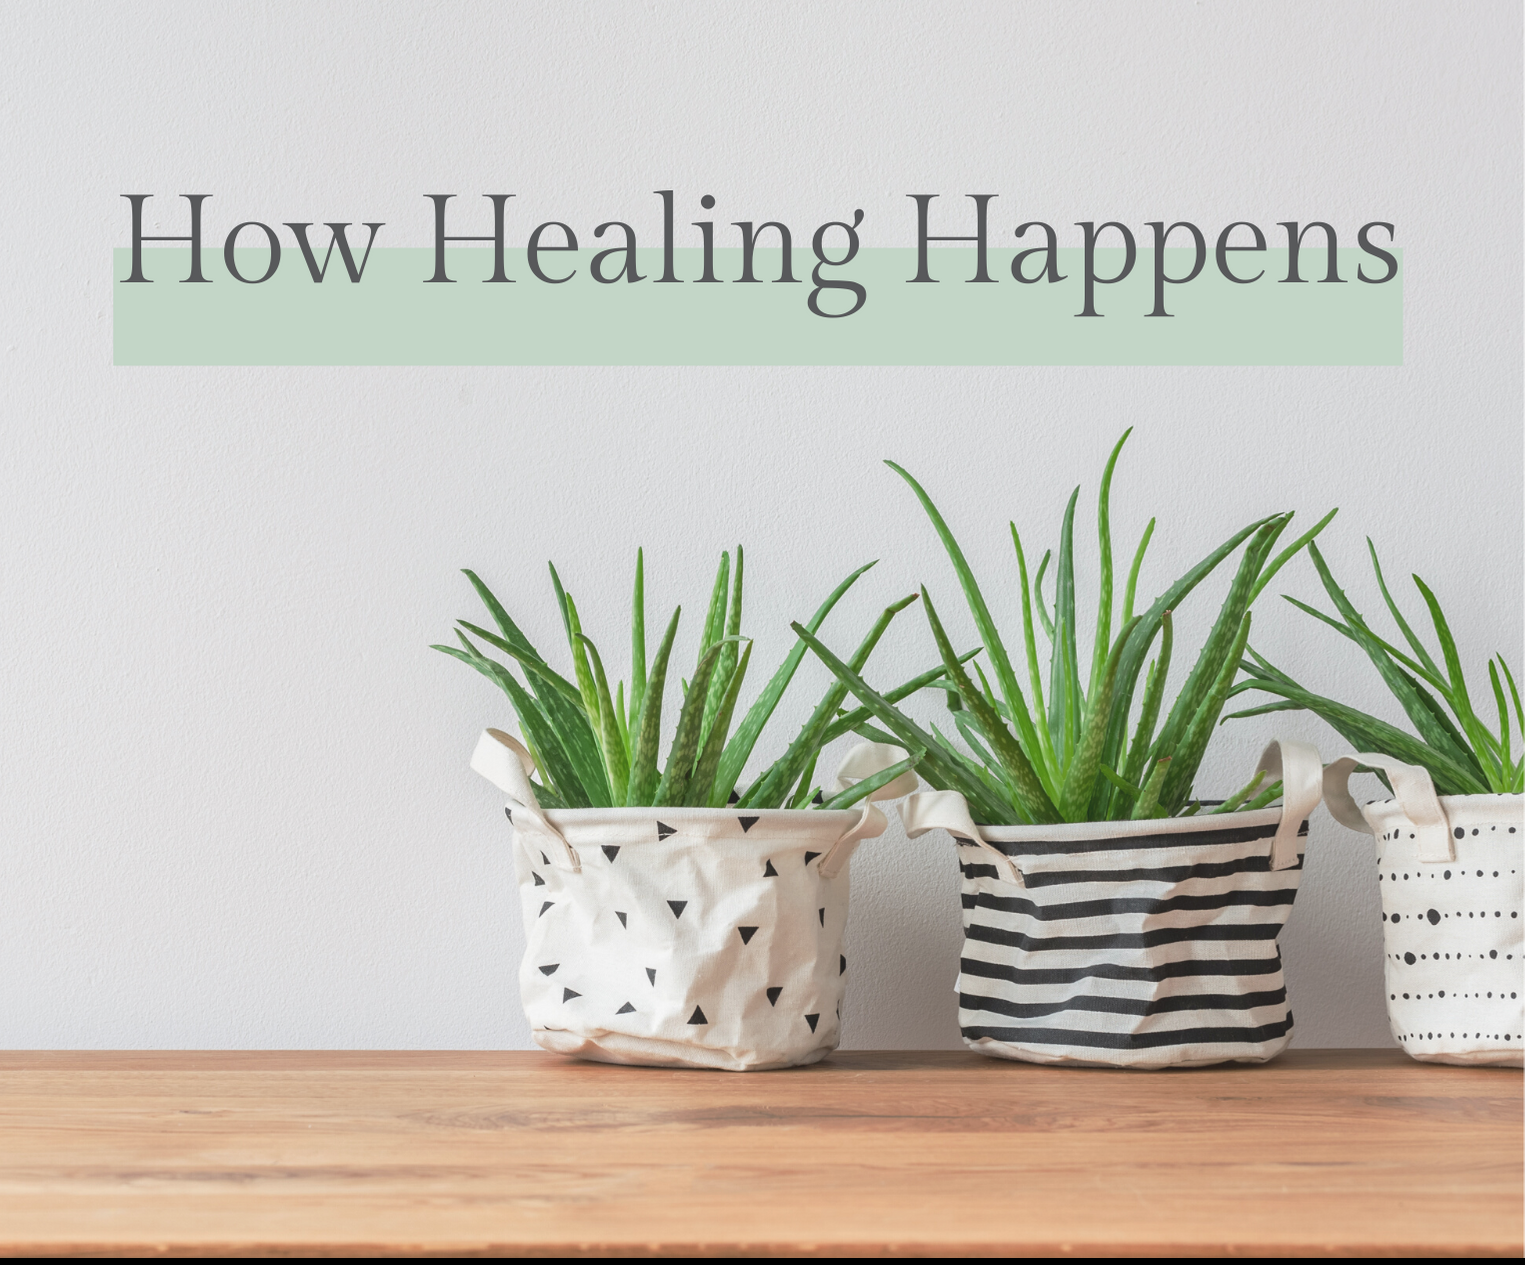 How healing happens